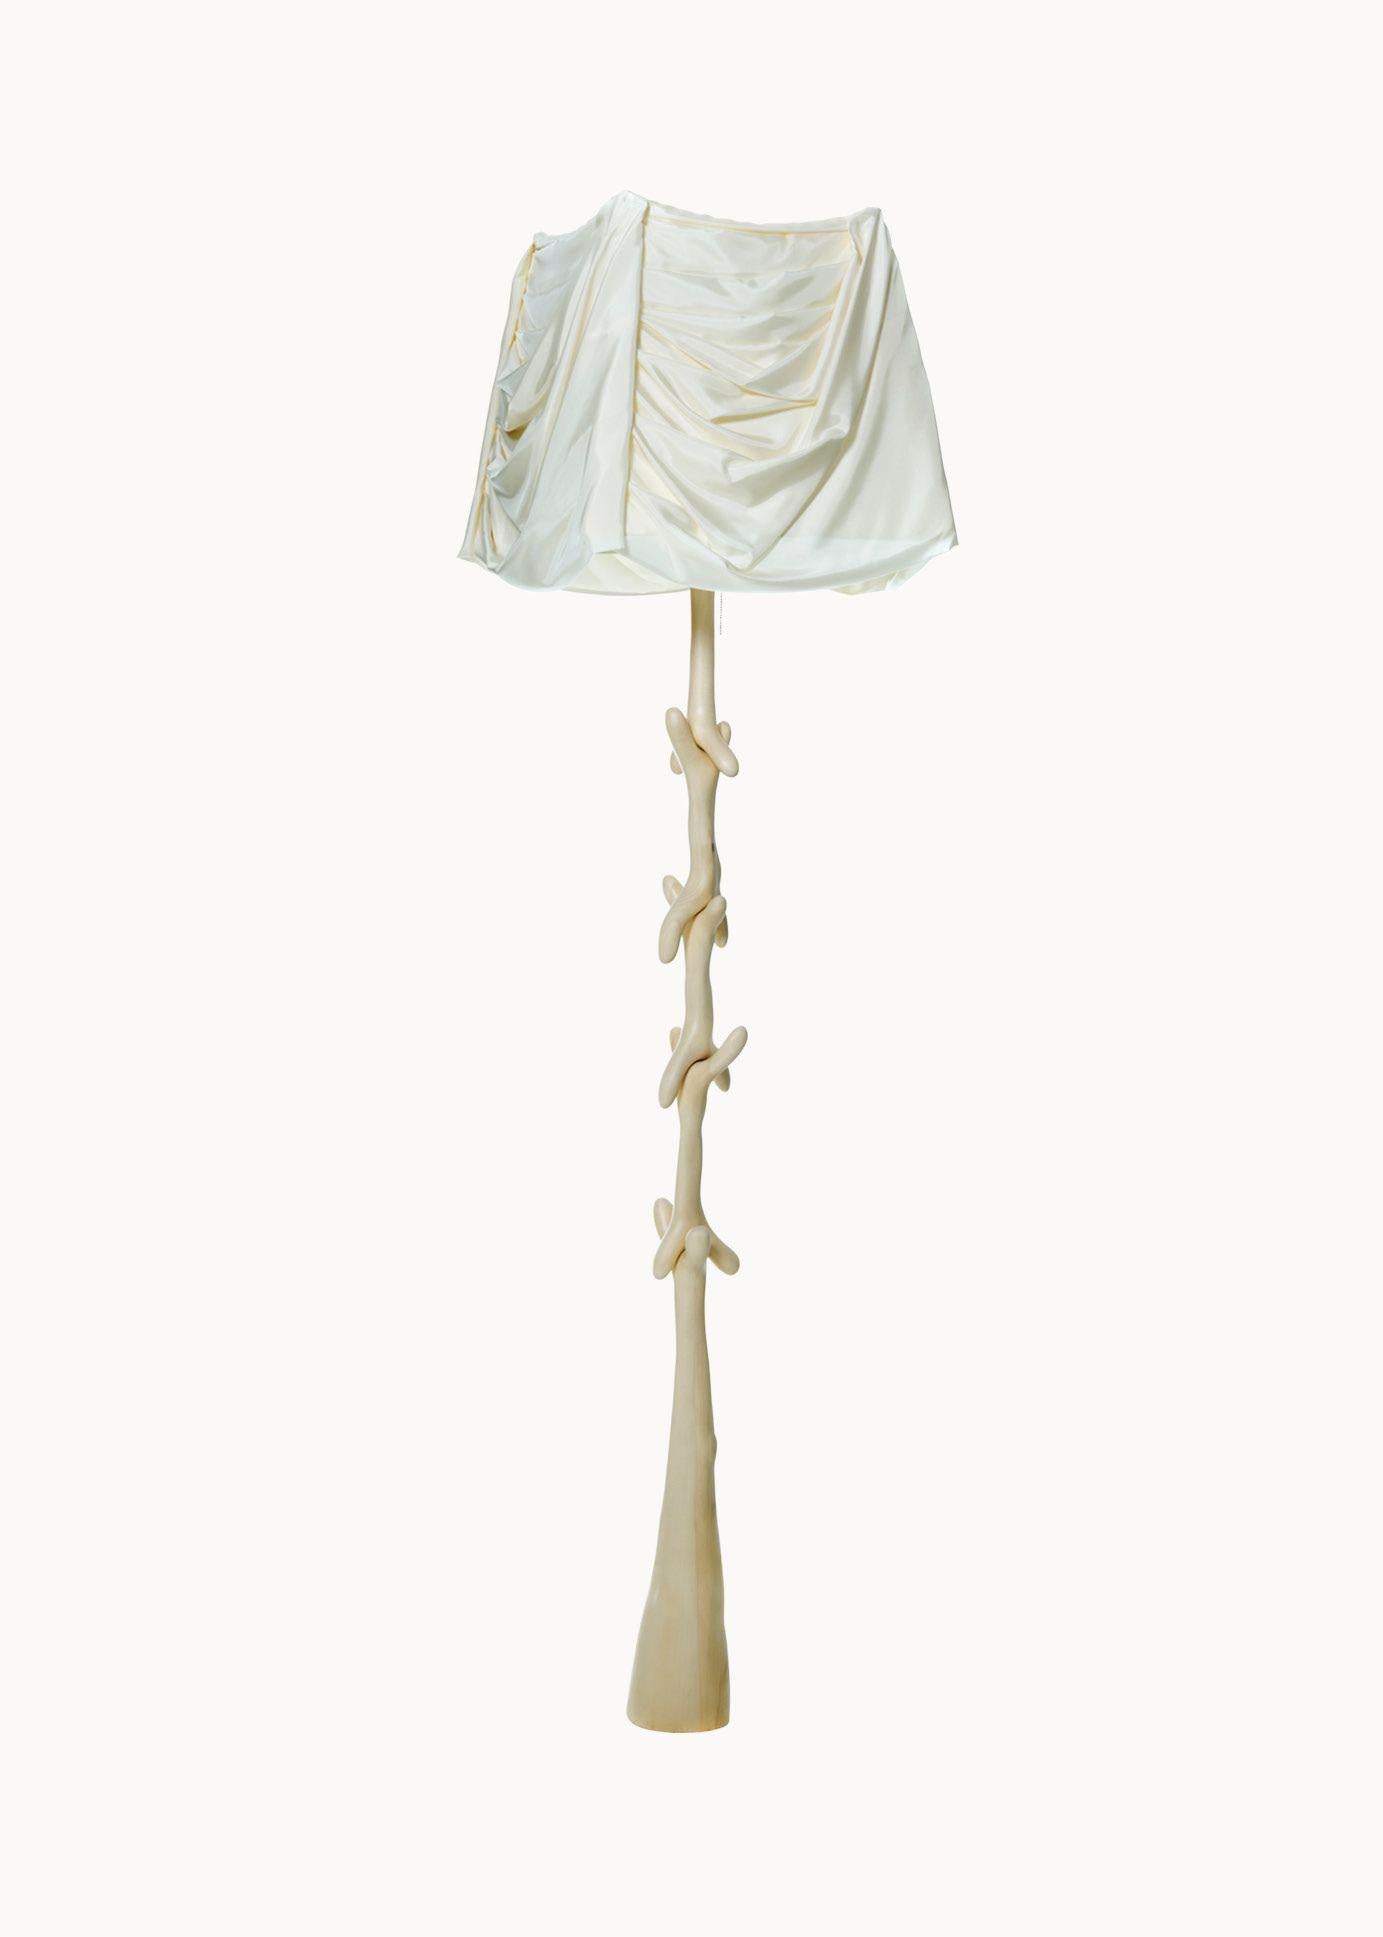 Illuminez votre espace avec une lampe sur pied unique, conçue par Salvador Dali et fabriquée par BD furniture à Barcelone. La structure sculptée Muletas et Cajones, en bois de tilleul verni pâle, est dotée d'un abat-jour en lin beige qui ajoute une